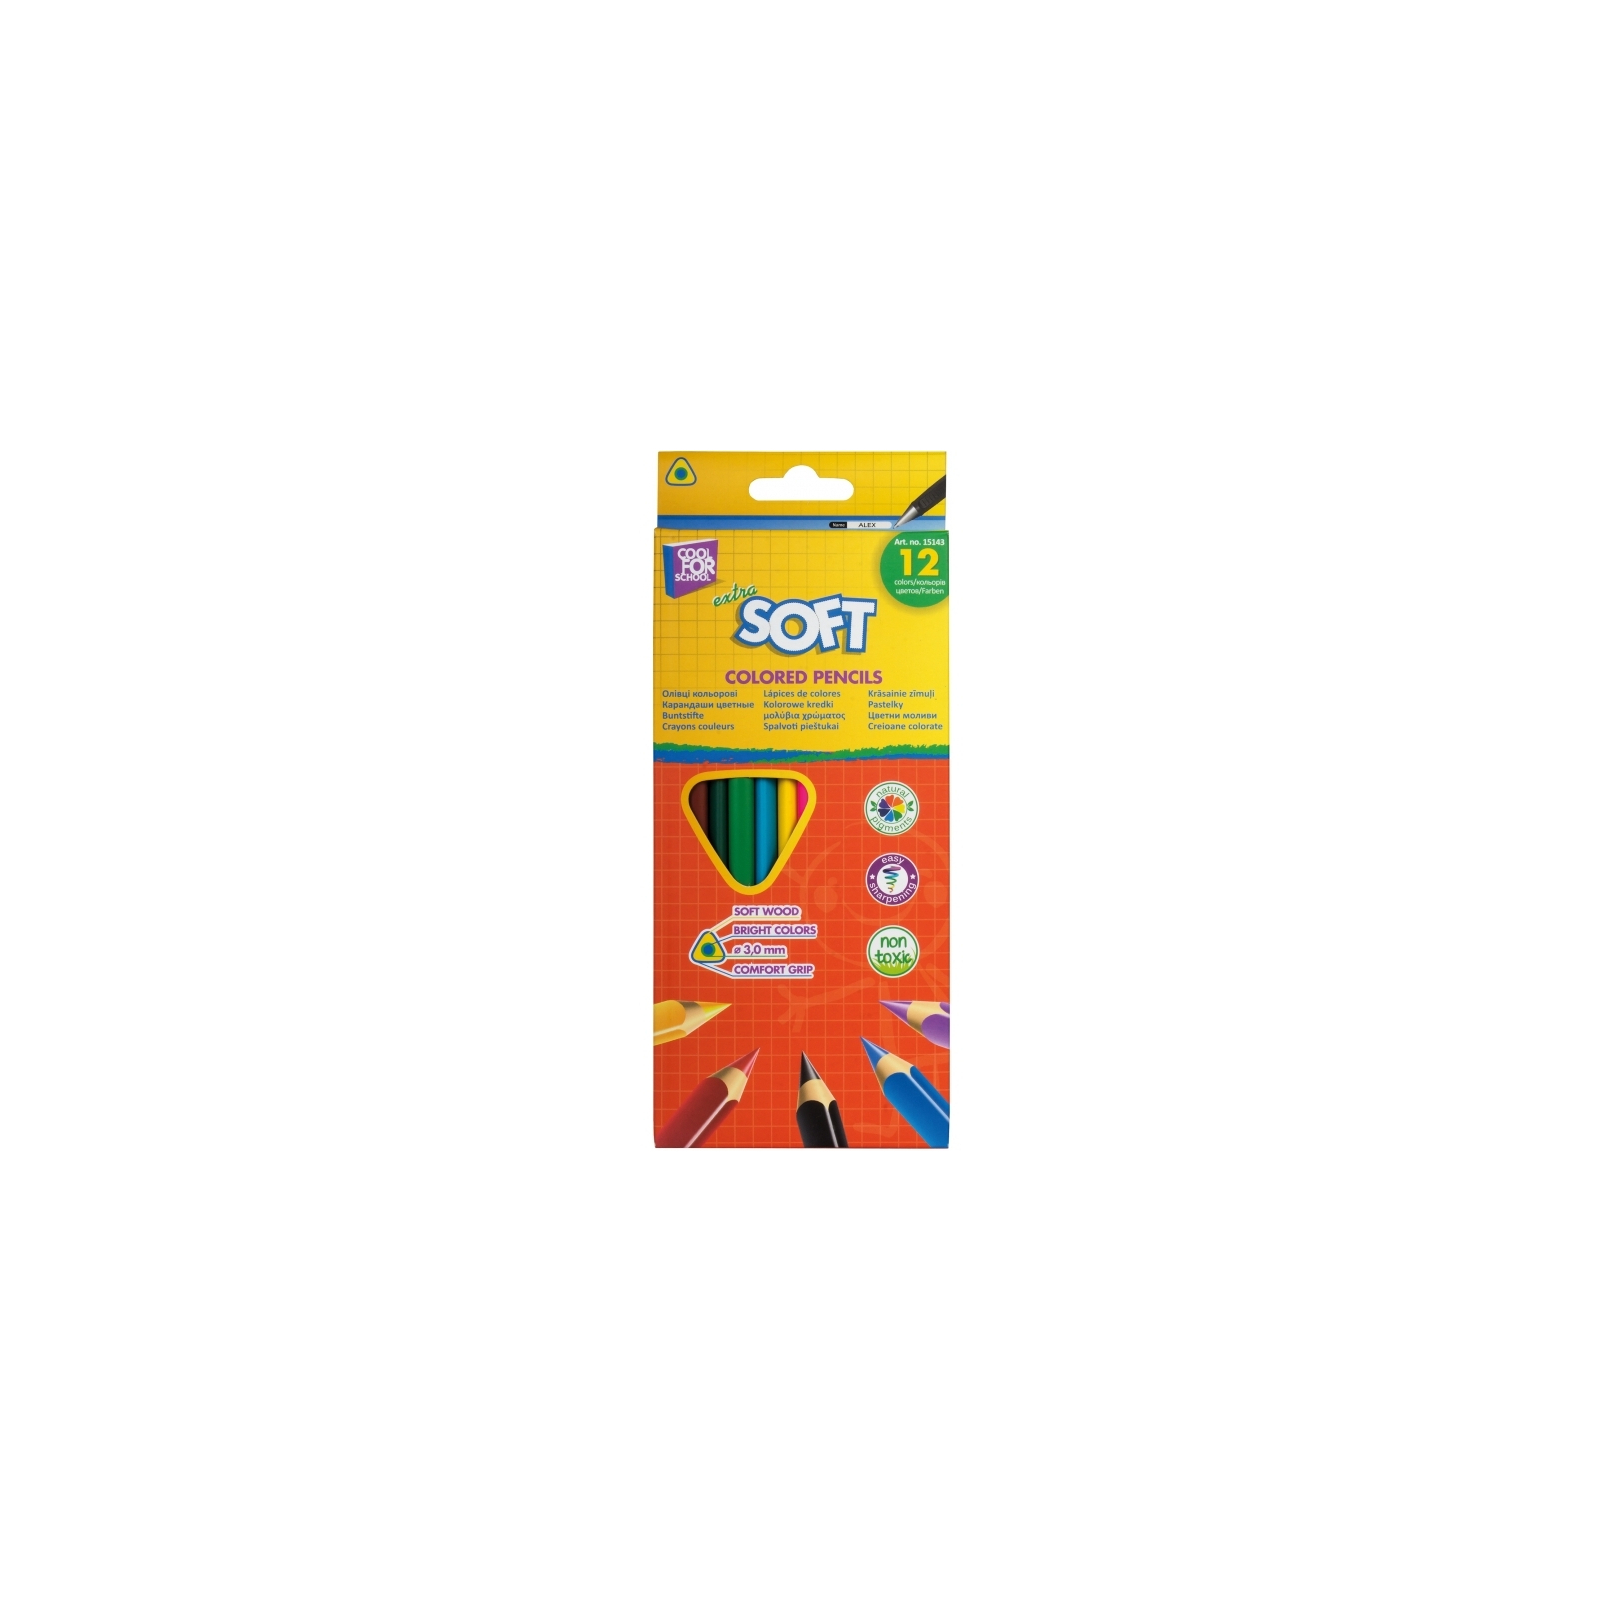 Карандаши цветные Cool For School Extra Soft 18 цветов (CF15144)